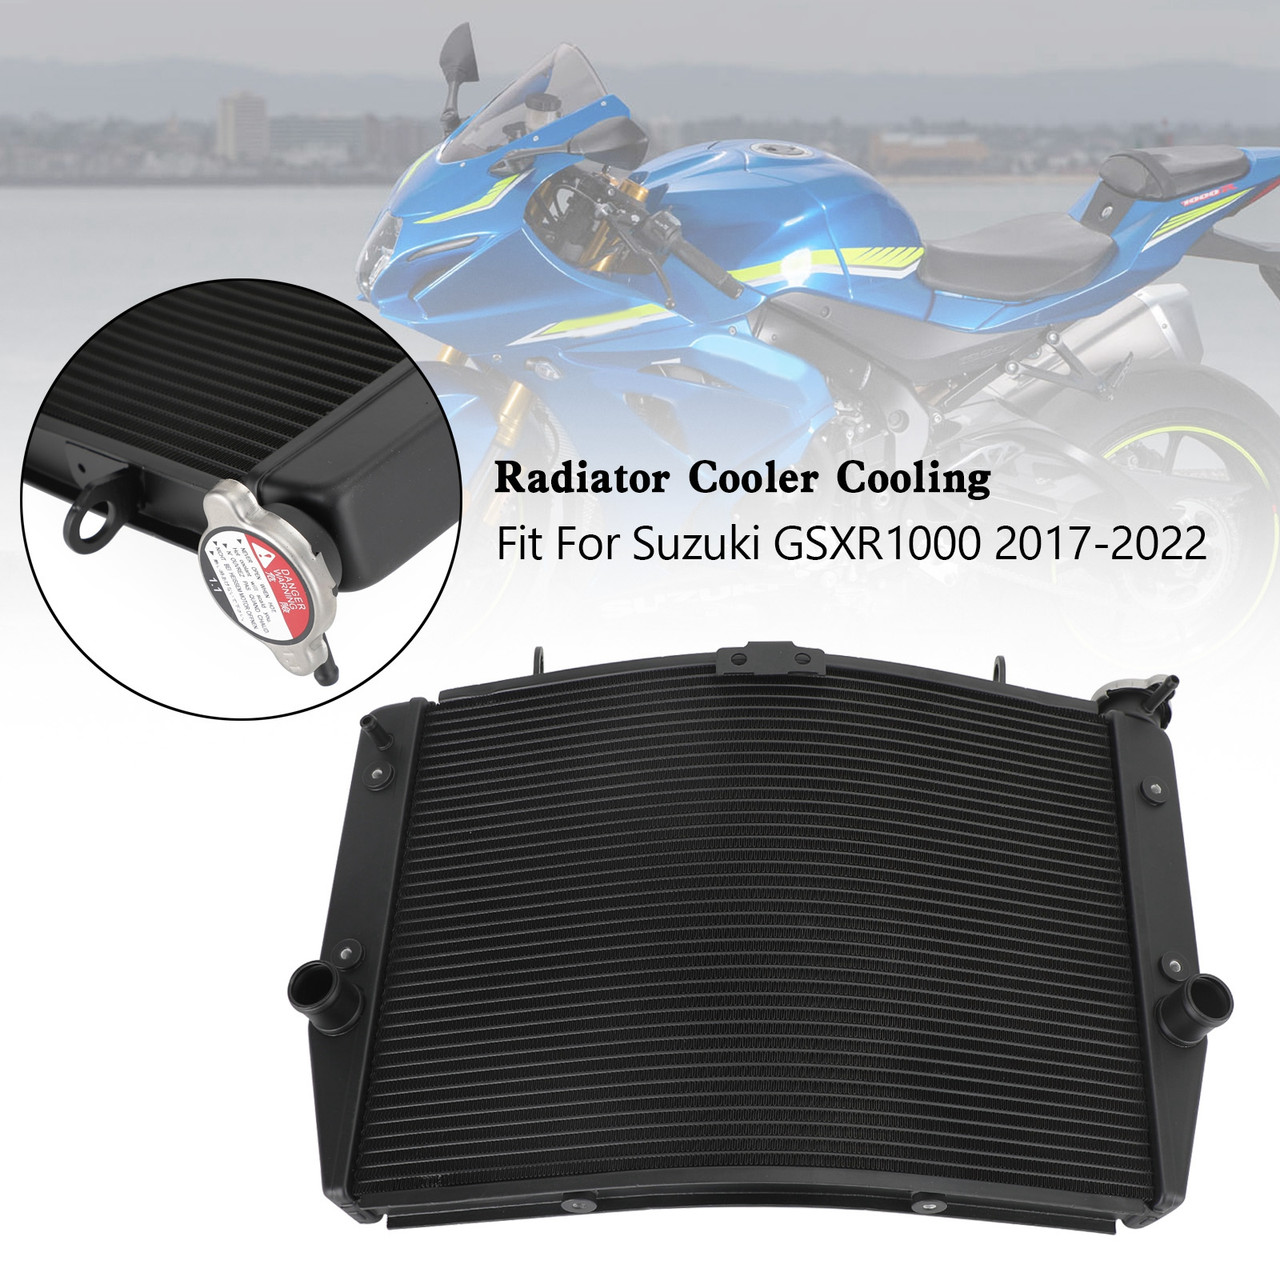 Engine Radiator Cooler Cooling Fit For Suzuki GSXR 1000 GSX-R 2017-2022 K11